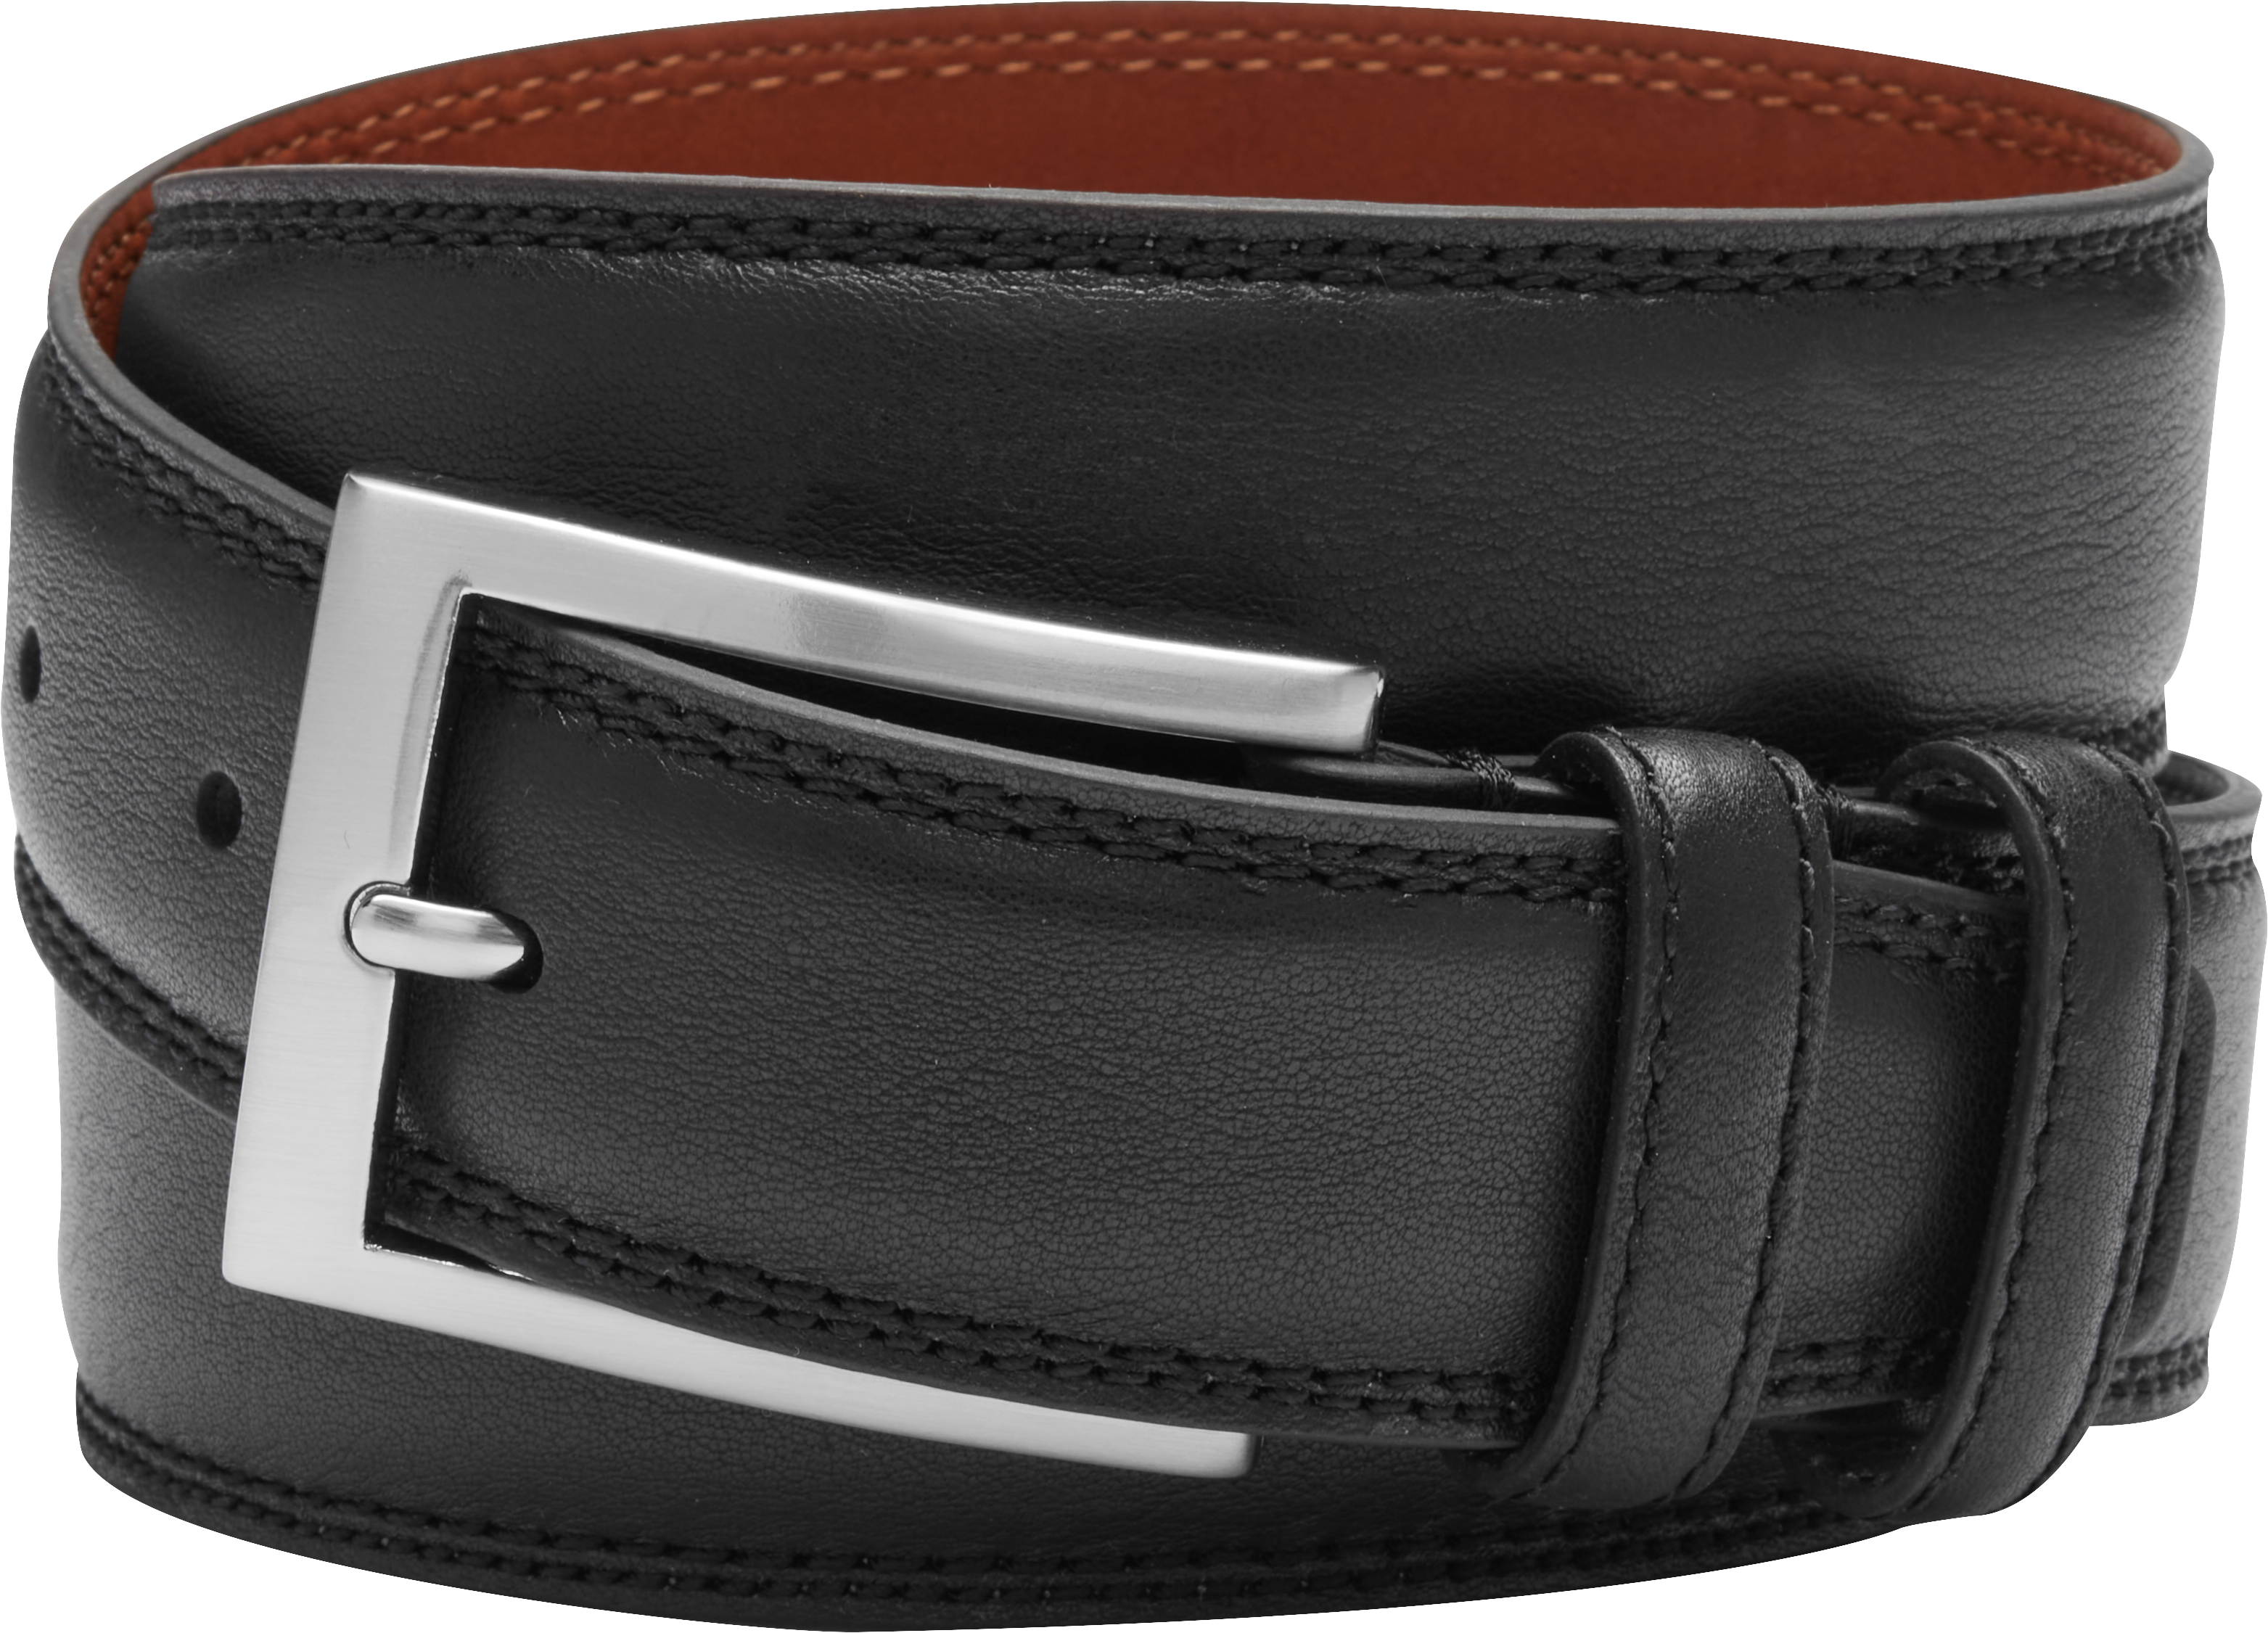 Black Formal Leather Belt - Sartolane